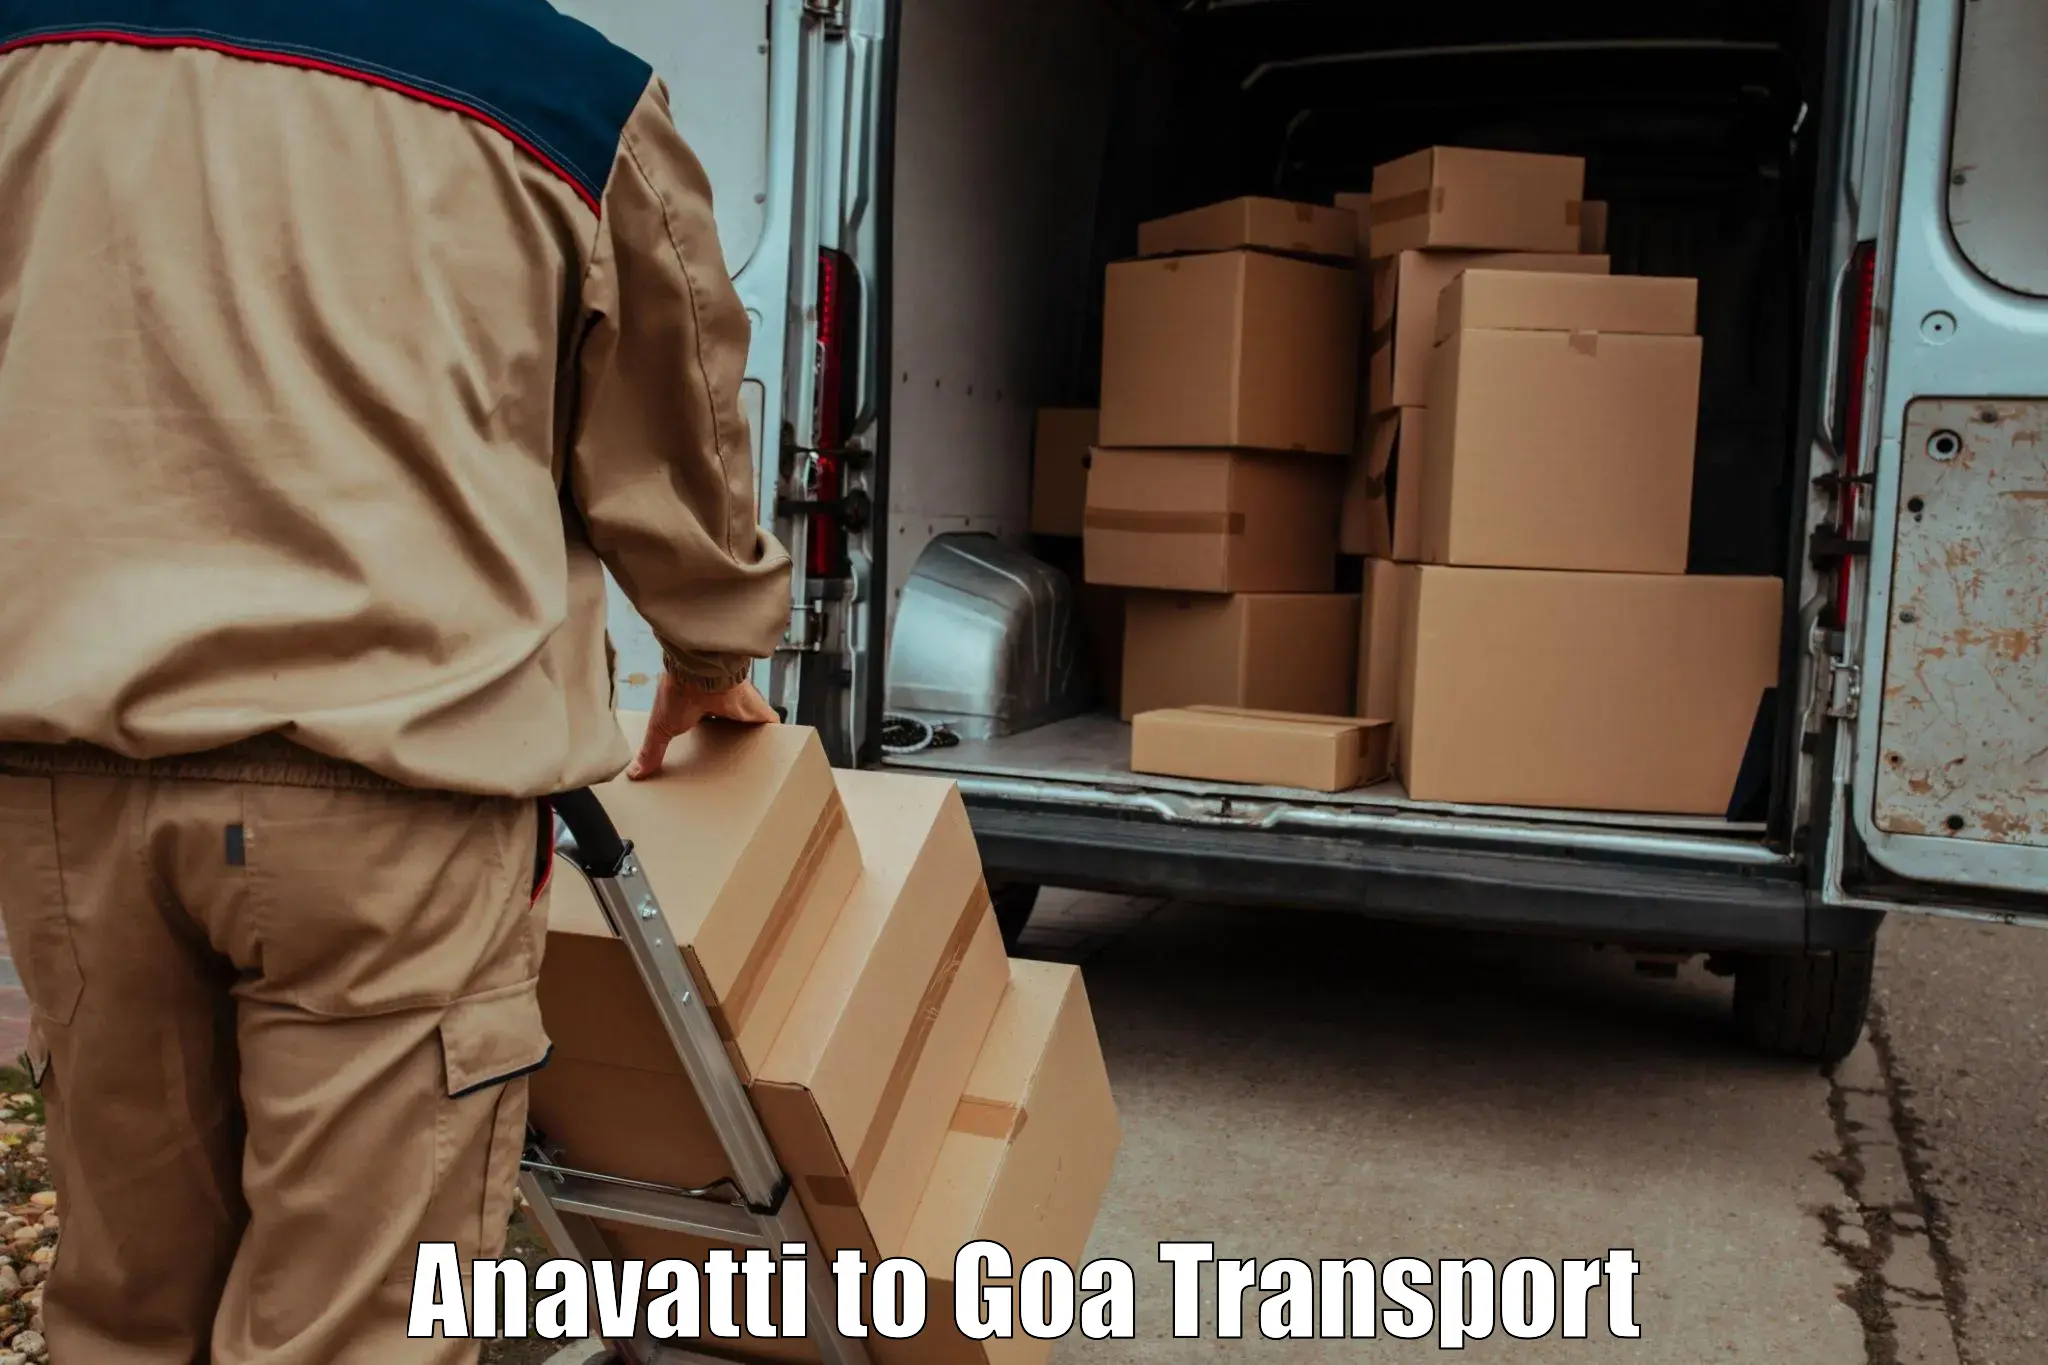 Pick up transport service Anavatti to Vasco da Gama